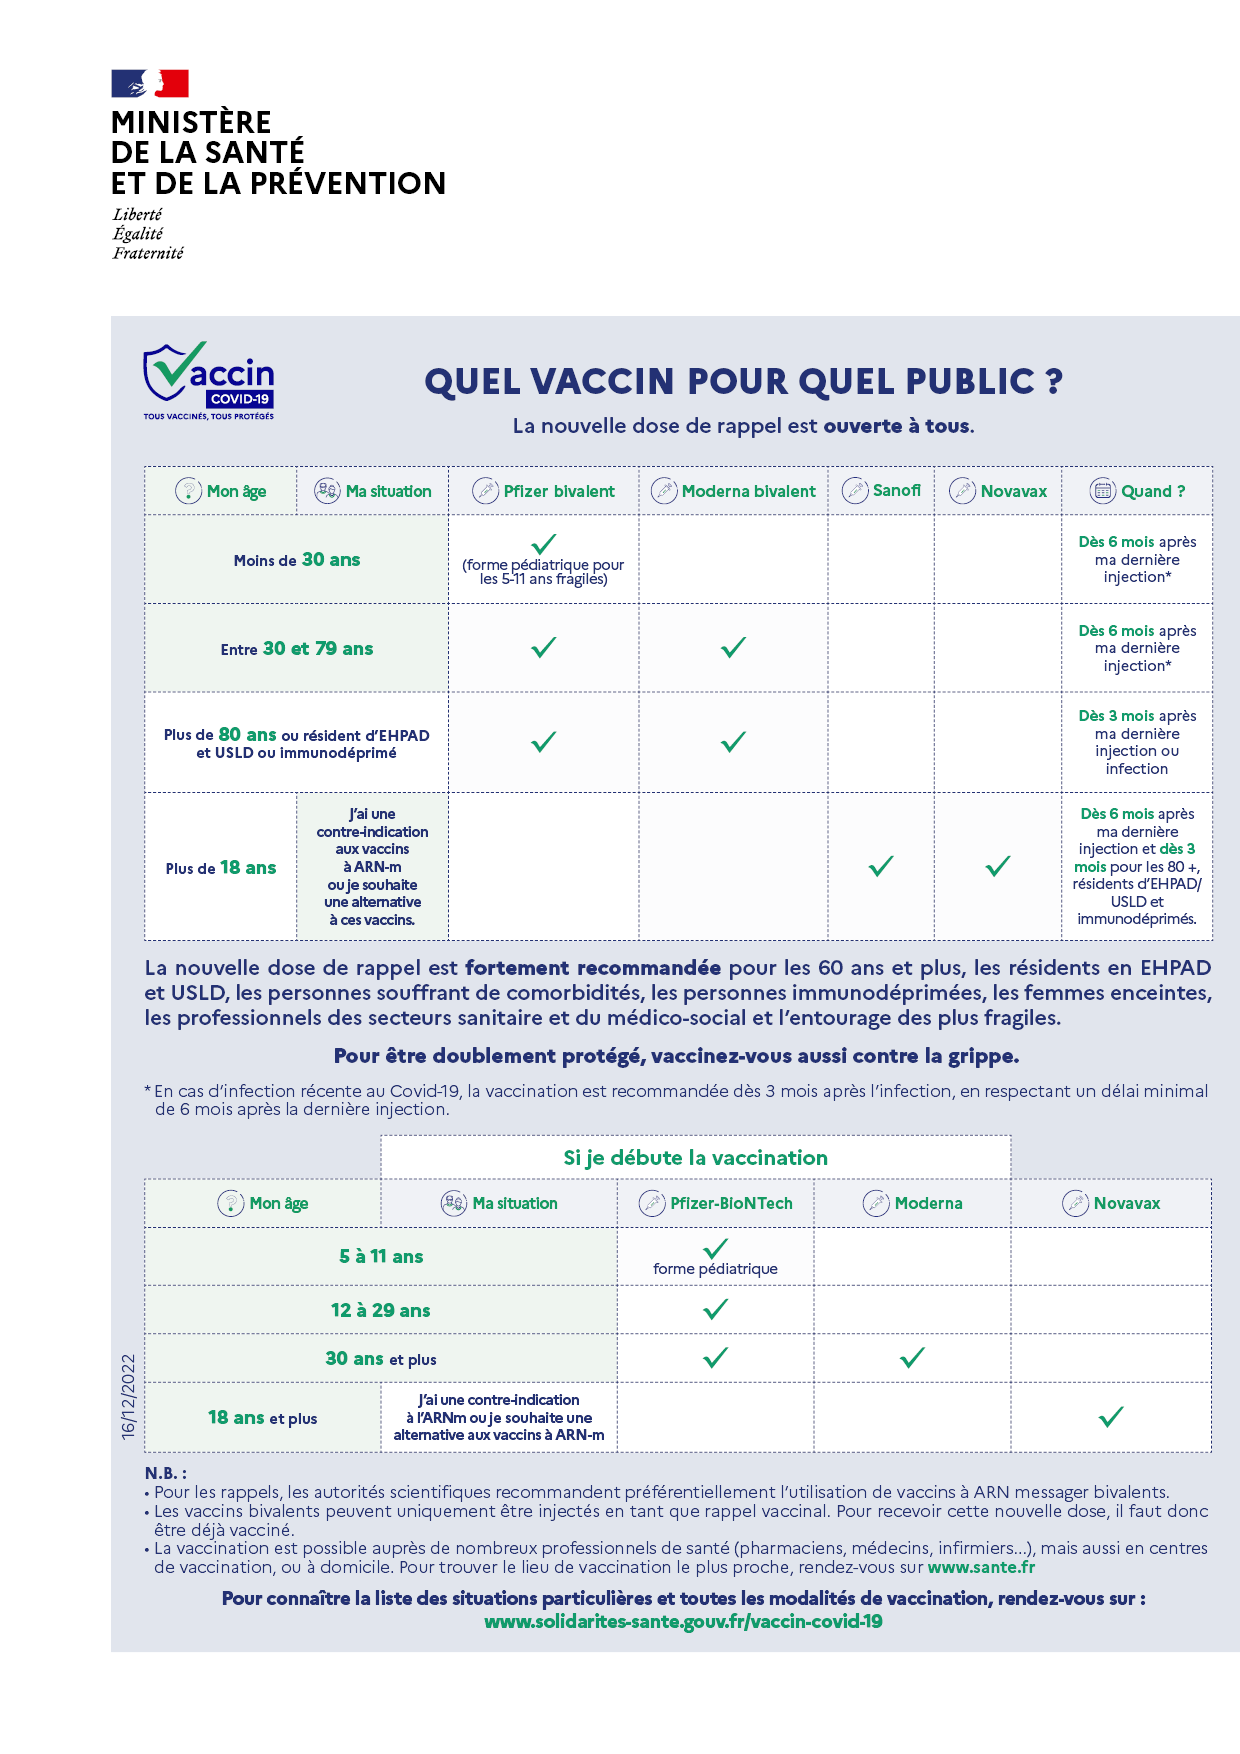 Infographie - Quels vaccins pour quel public ? Voir la description ci-après